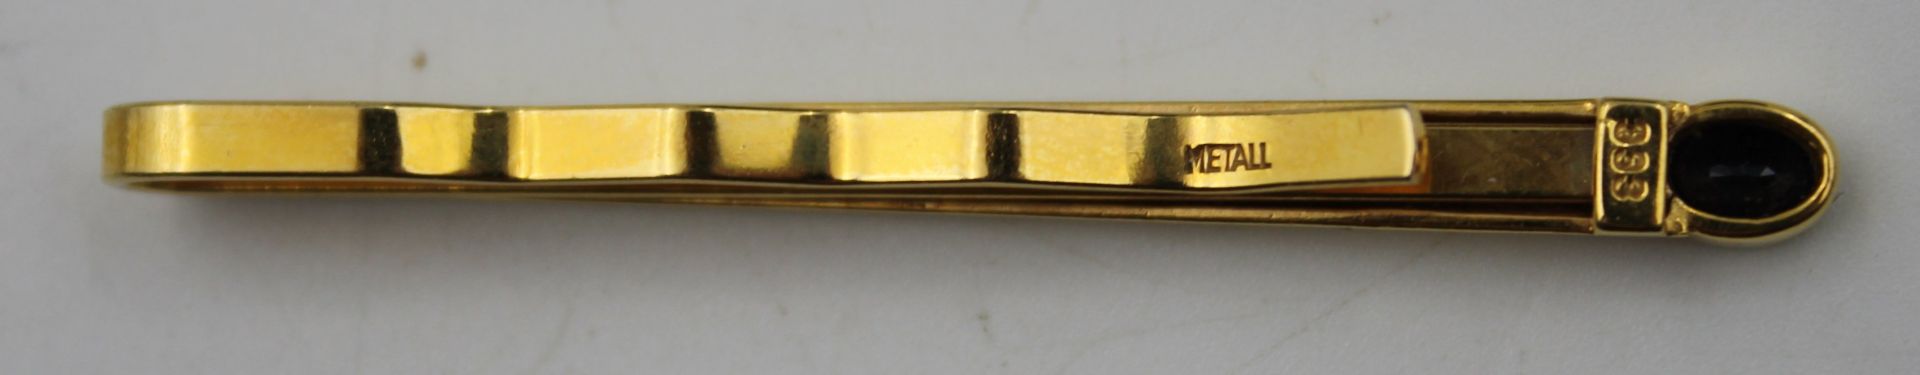 Kravattennadel, GG 333, Brillant und Safir, Klammer Metall, L-6cm. - Bild 2 aus 4